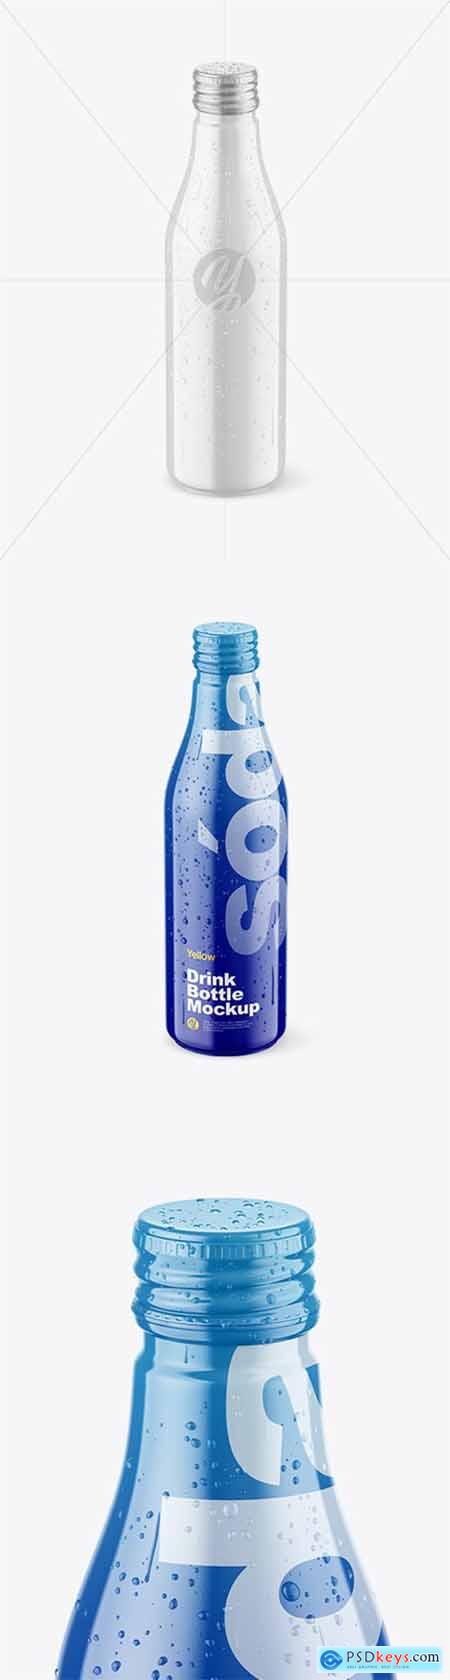 Glossy Drink Bottle w- Drops Mockup 78312